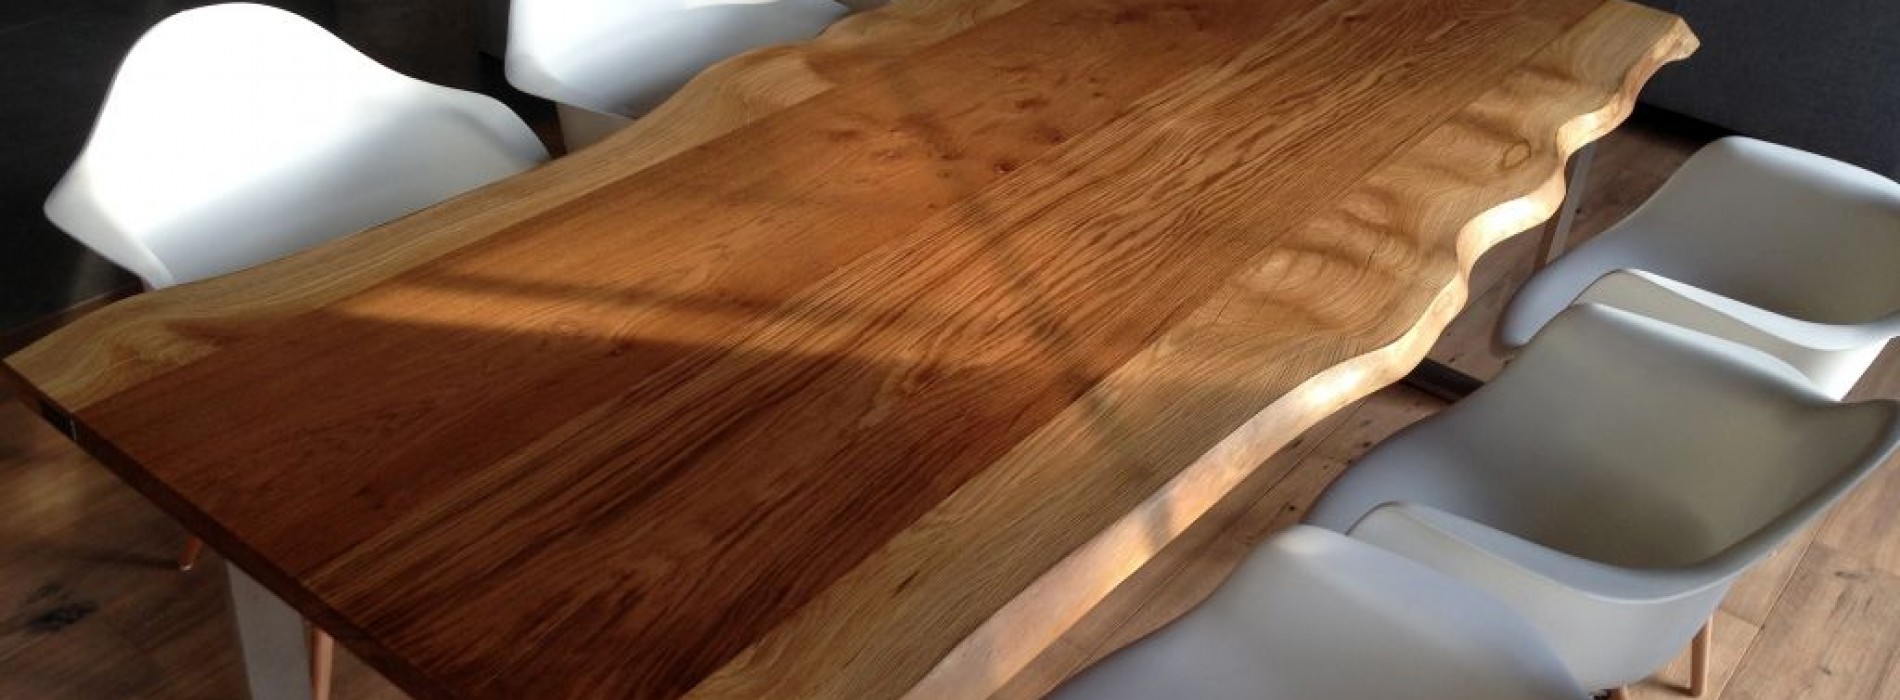 Oko artysty, ręka rzemieślnika  – stoły z litego drewna